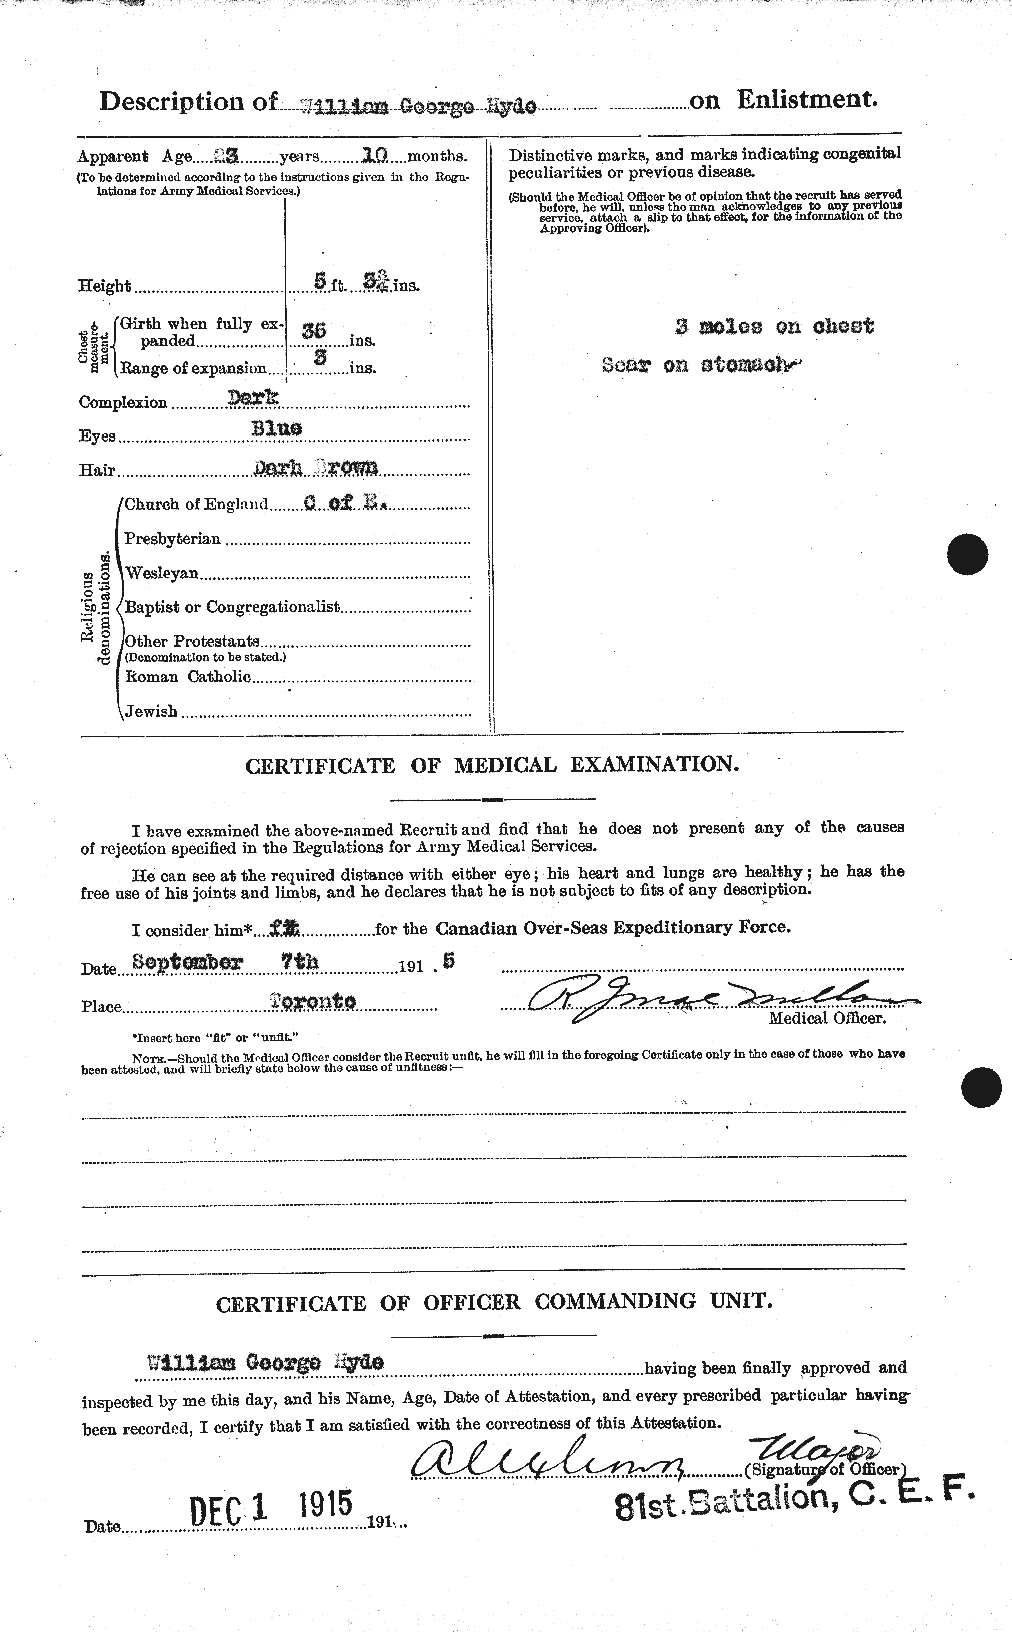 Dossiers du Personnel de la Première Guerre mondiale - CEC 411380b